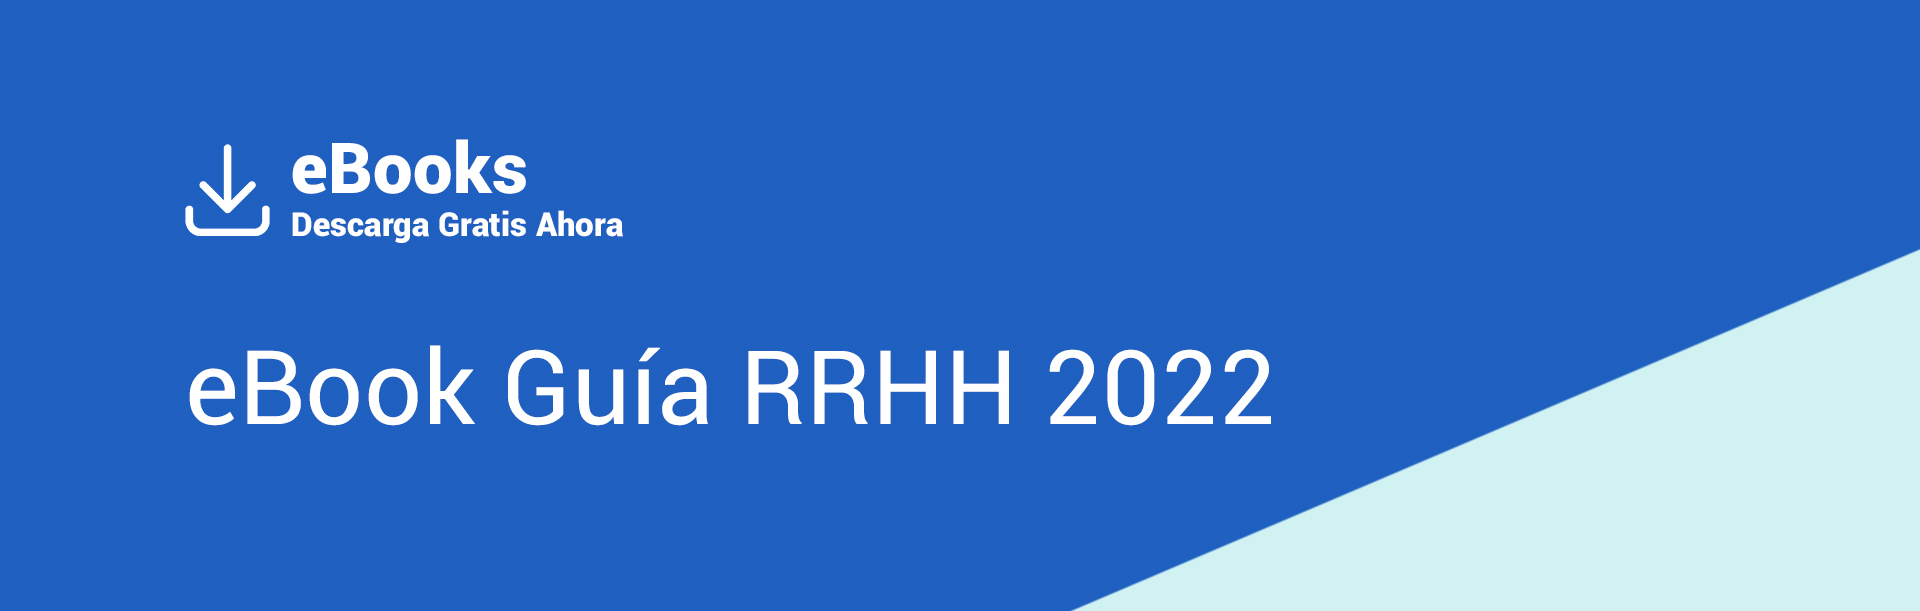 ebook guia rrhh 2022